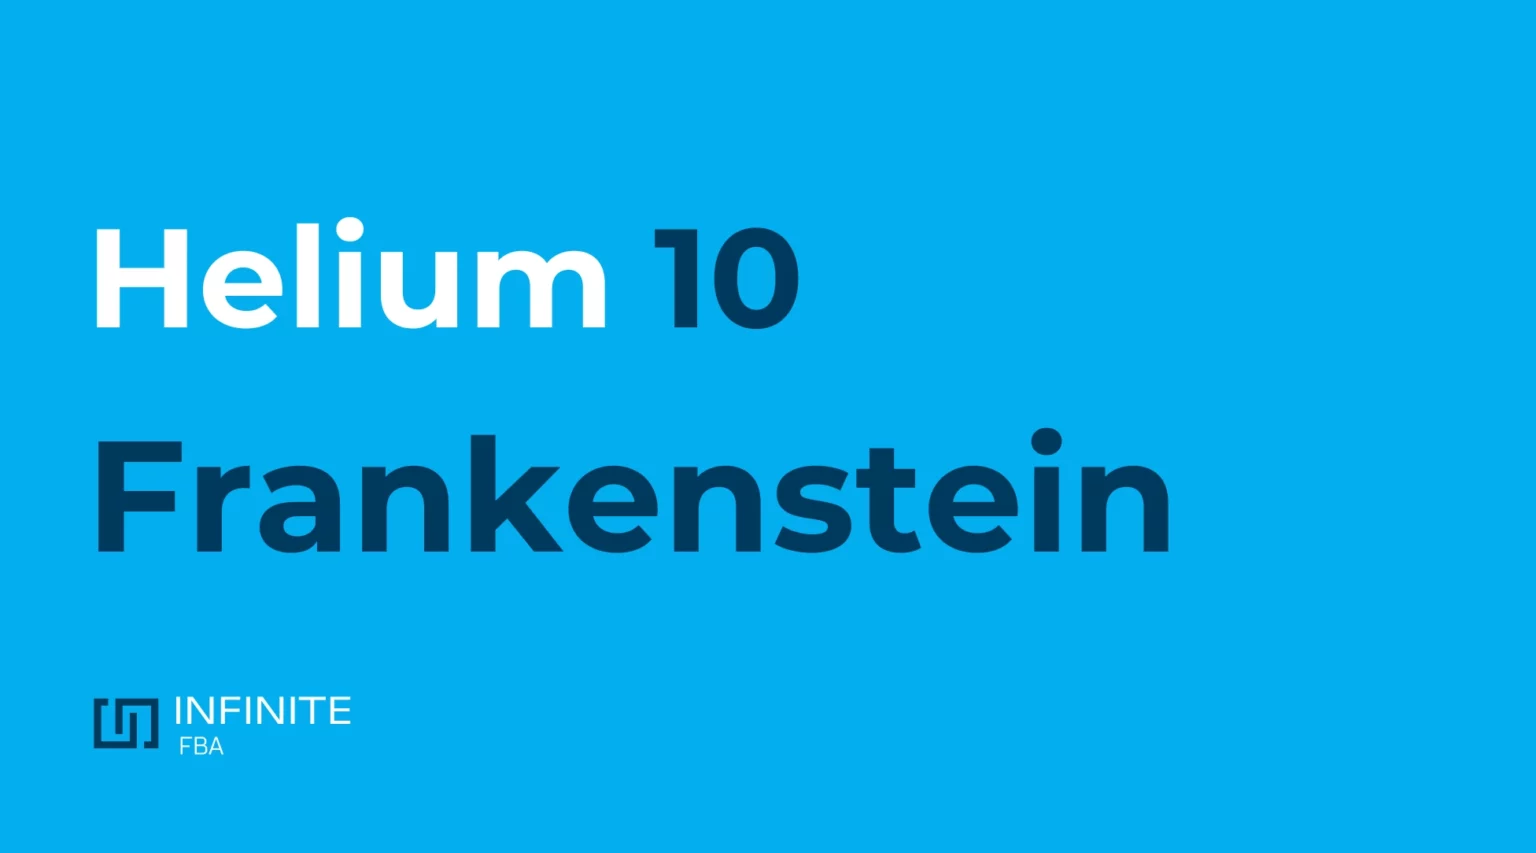 helium 10 frankenstein